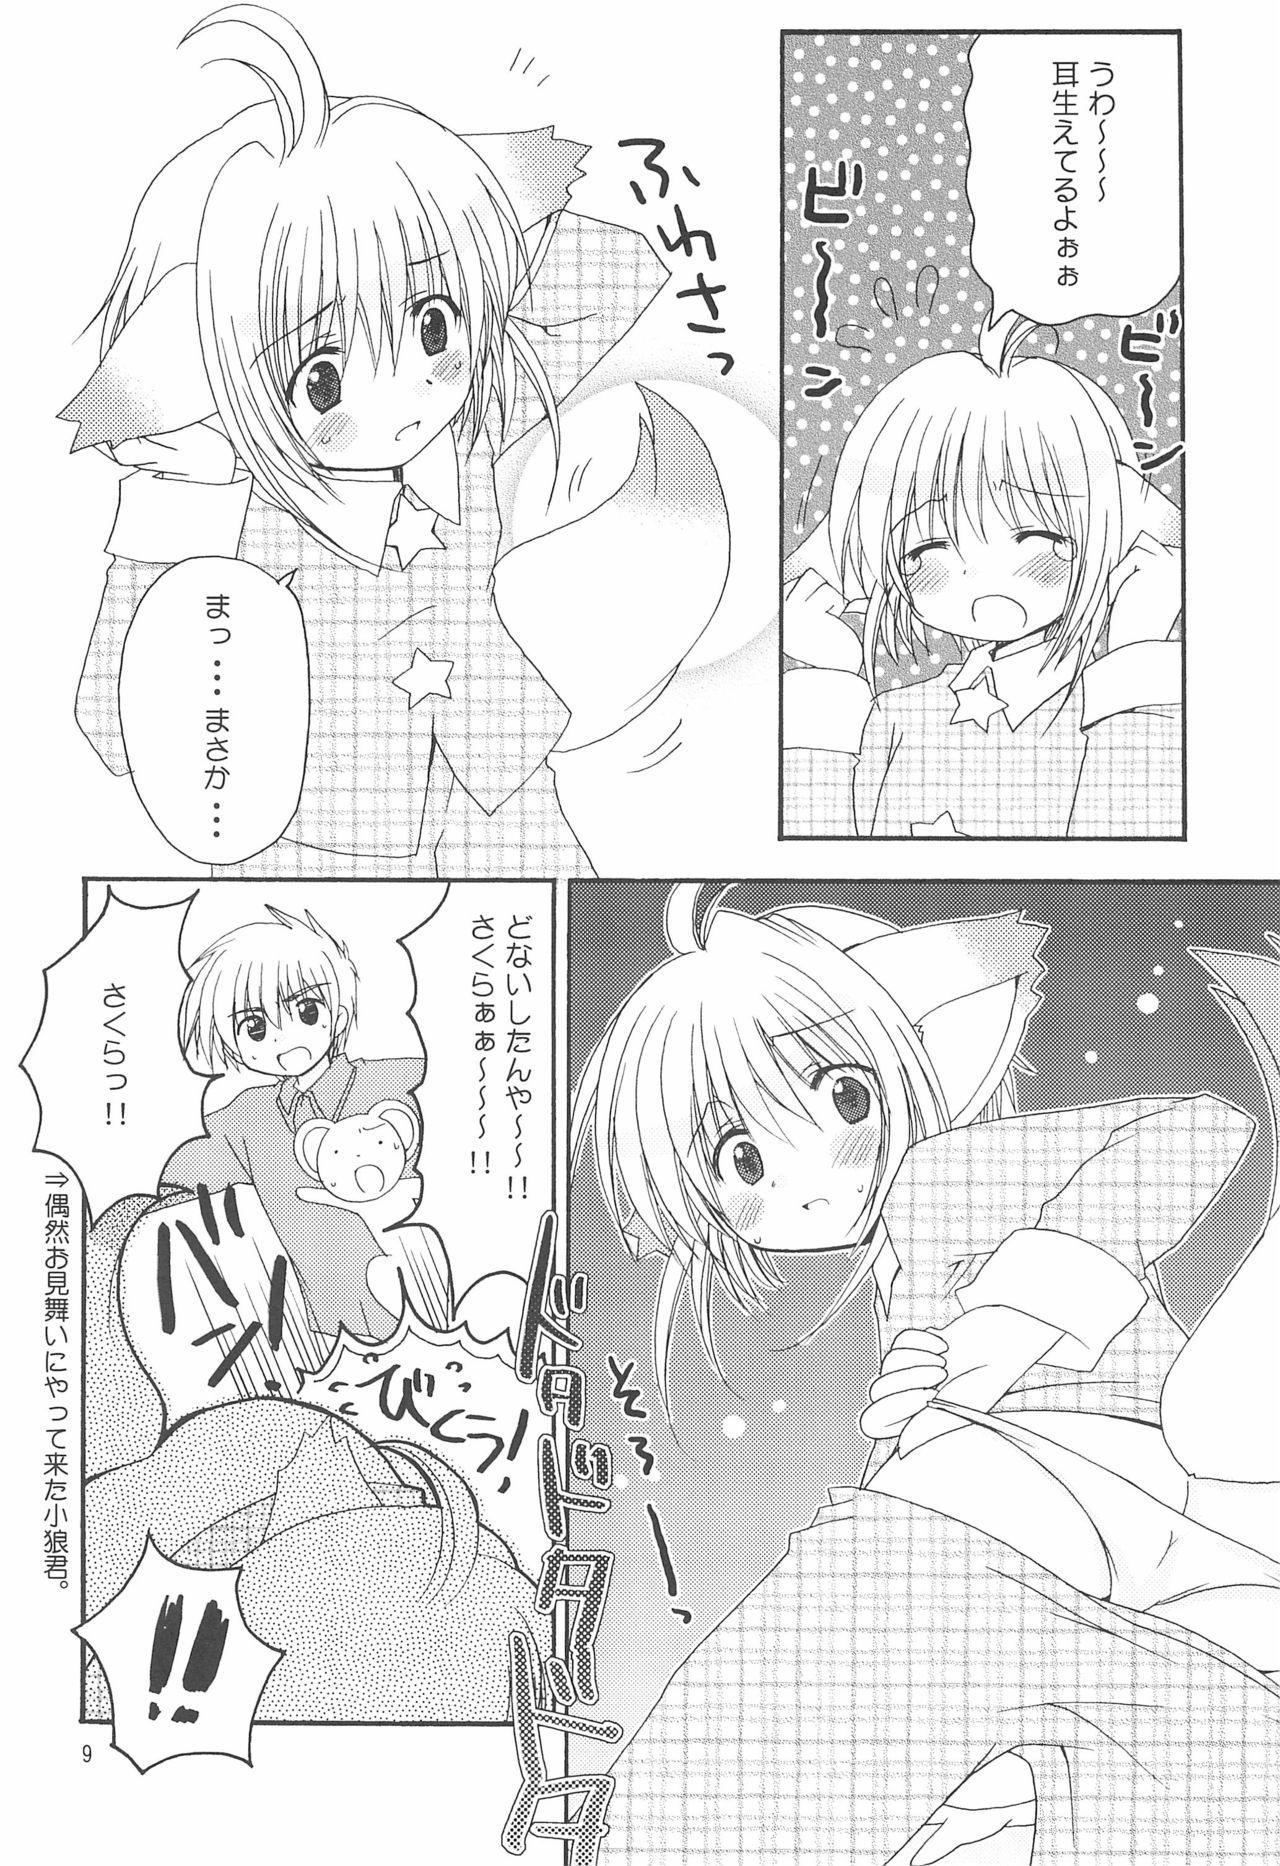 Anal strawberry - Cardcaptor sakura Para - Page 9